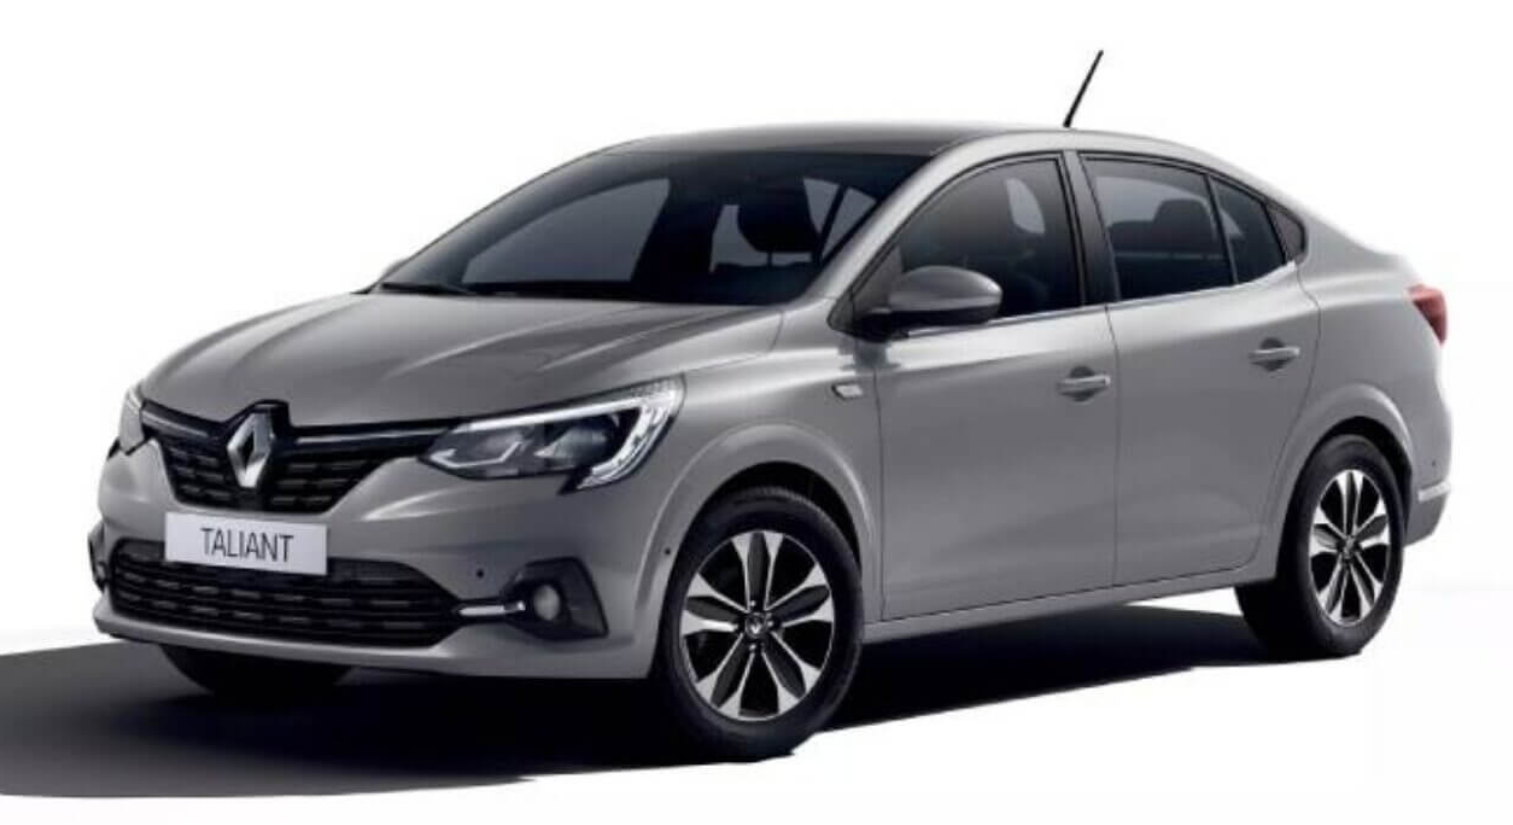 Otomobil Tutkunlarının Heyecanla Beklediği An Geldi! Renault Kullanıcılarına Sürpriz Fiyatları Sundu (1)